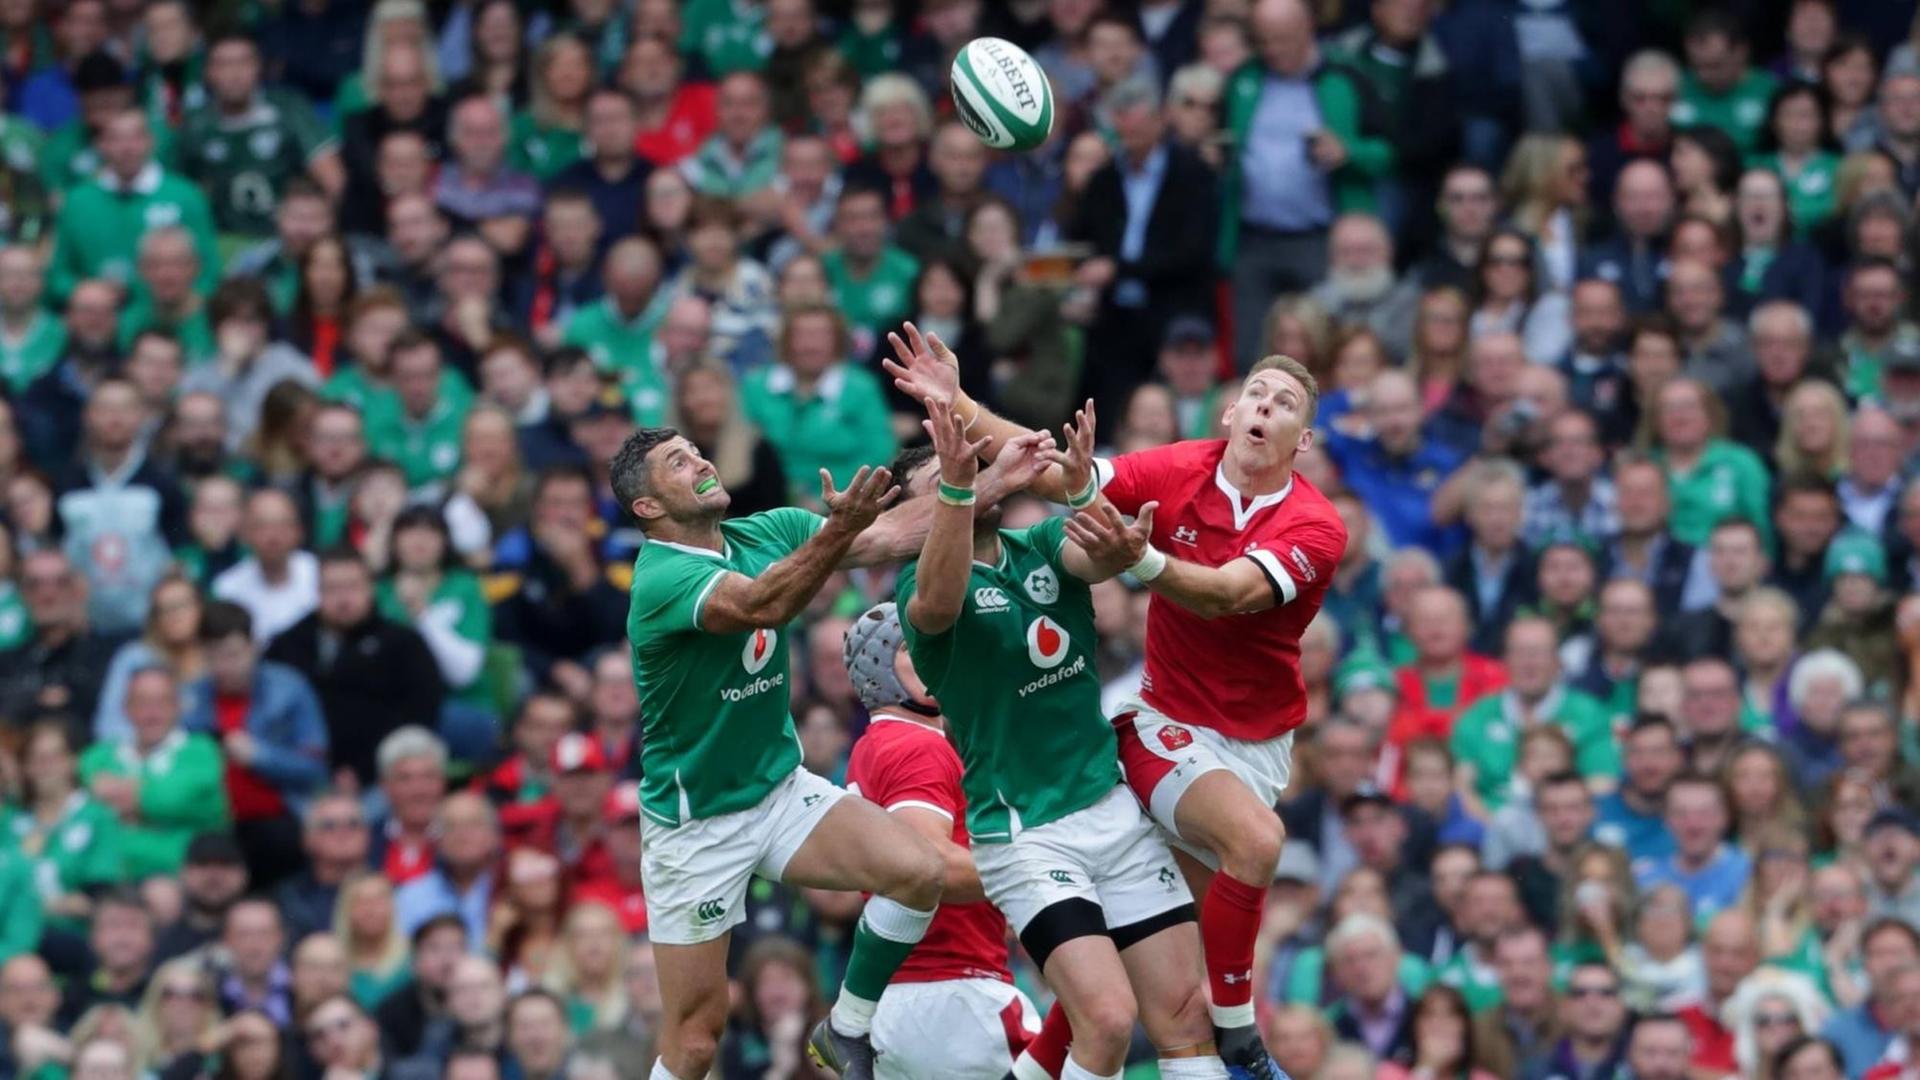 Spielszene beim Rugby: Irland gegen Wales. Mehrere Spieler springen dem Ball entgegen, der herunterfällt.